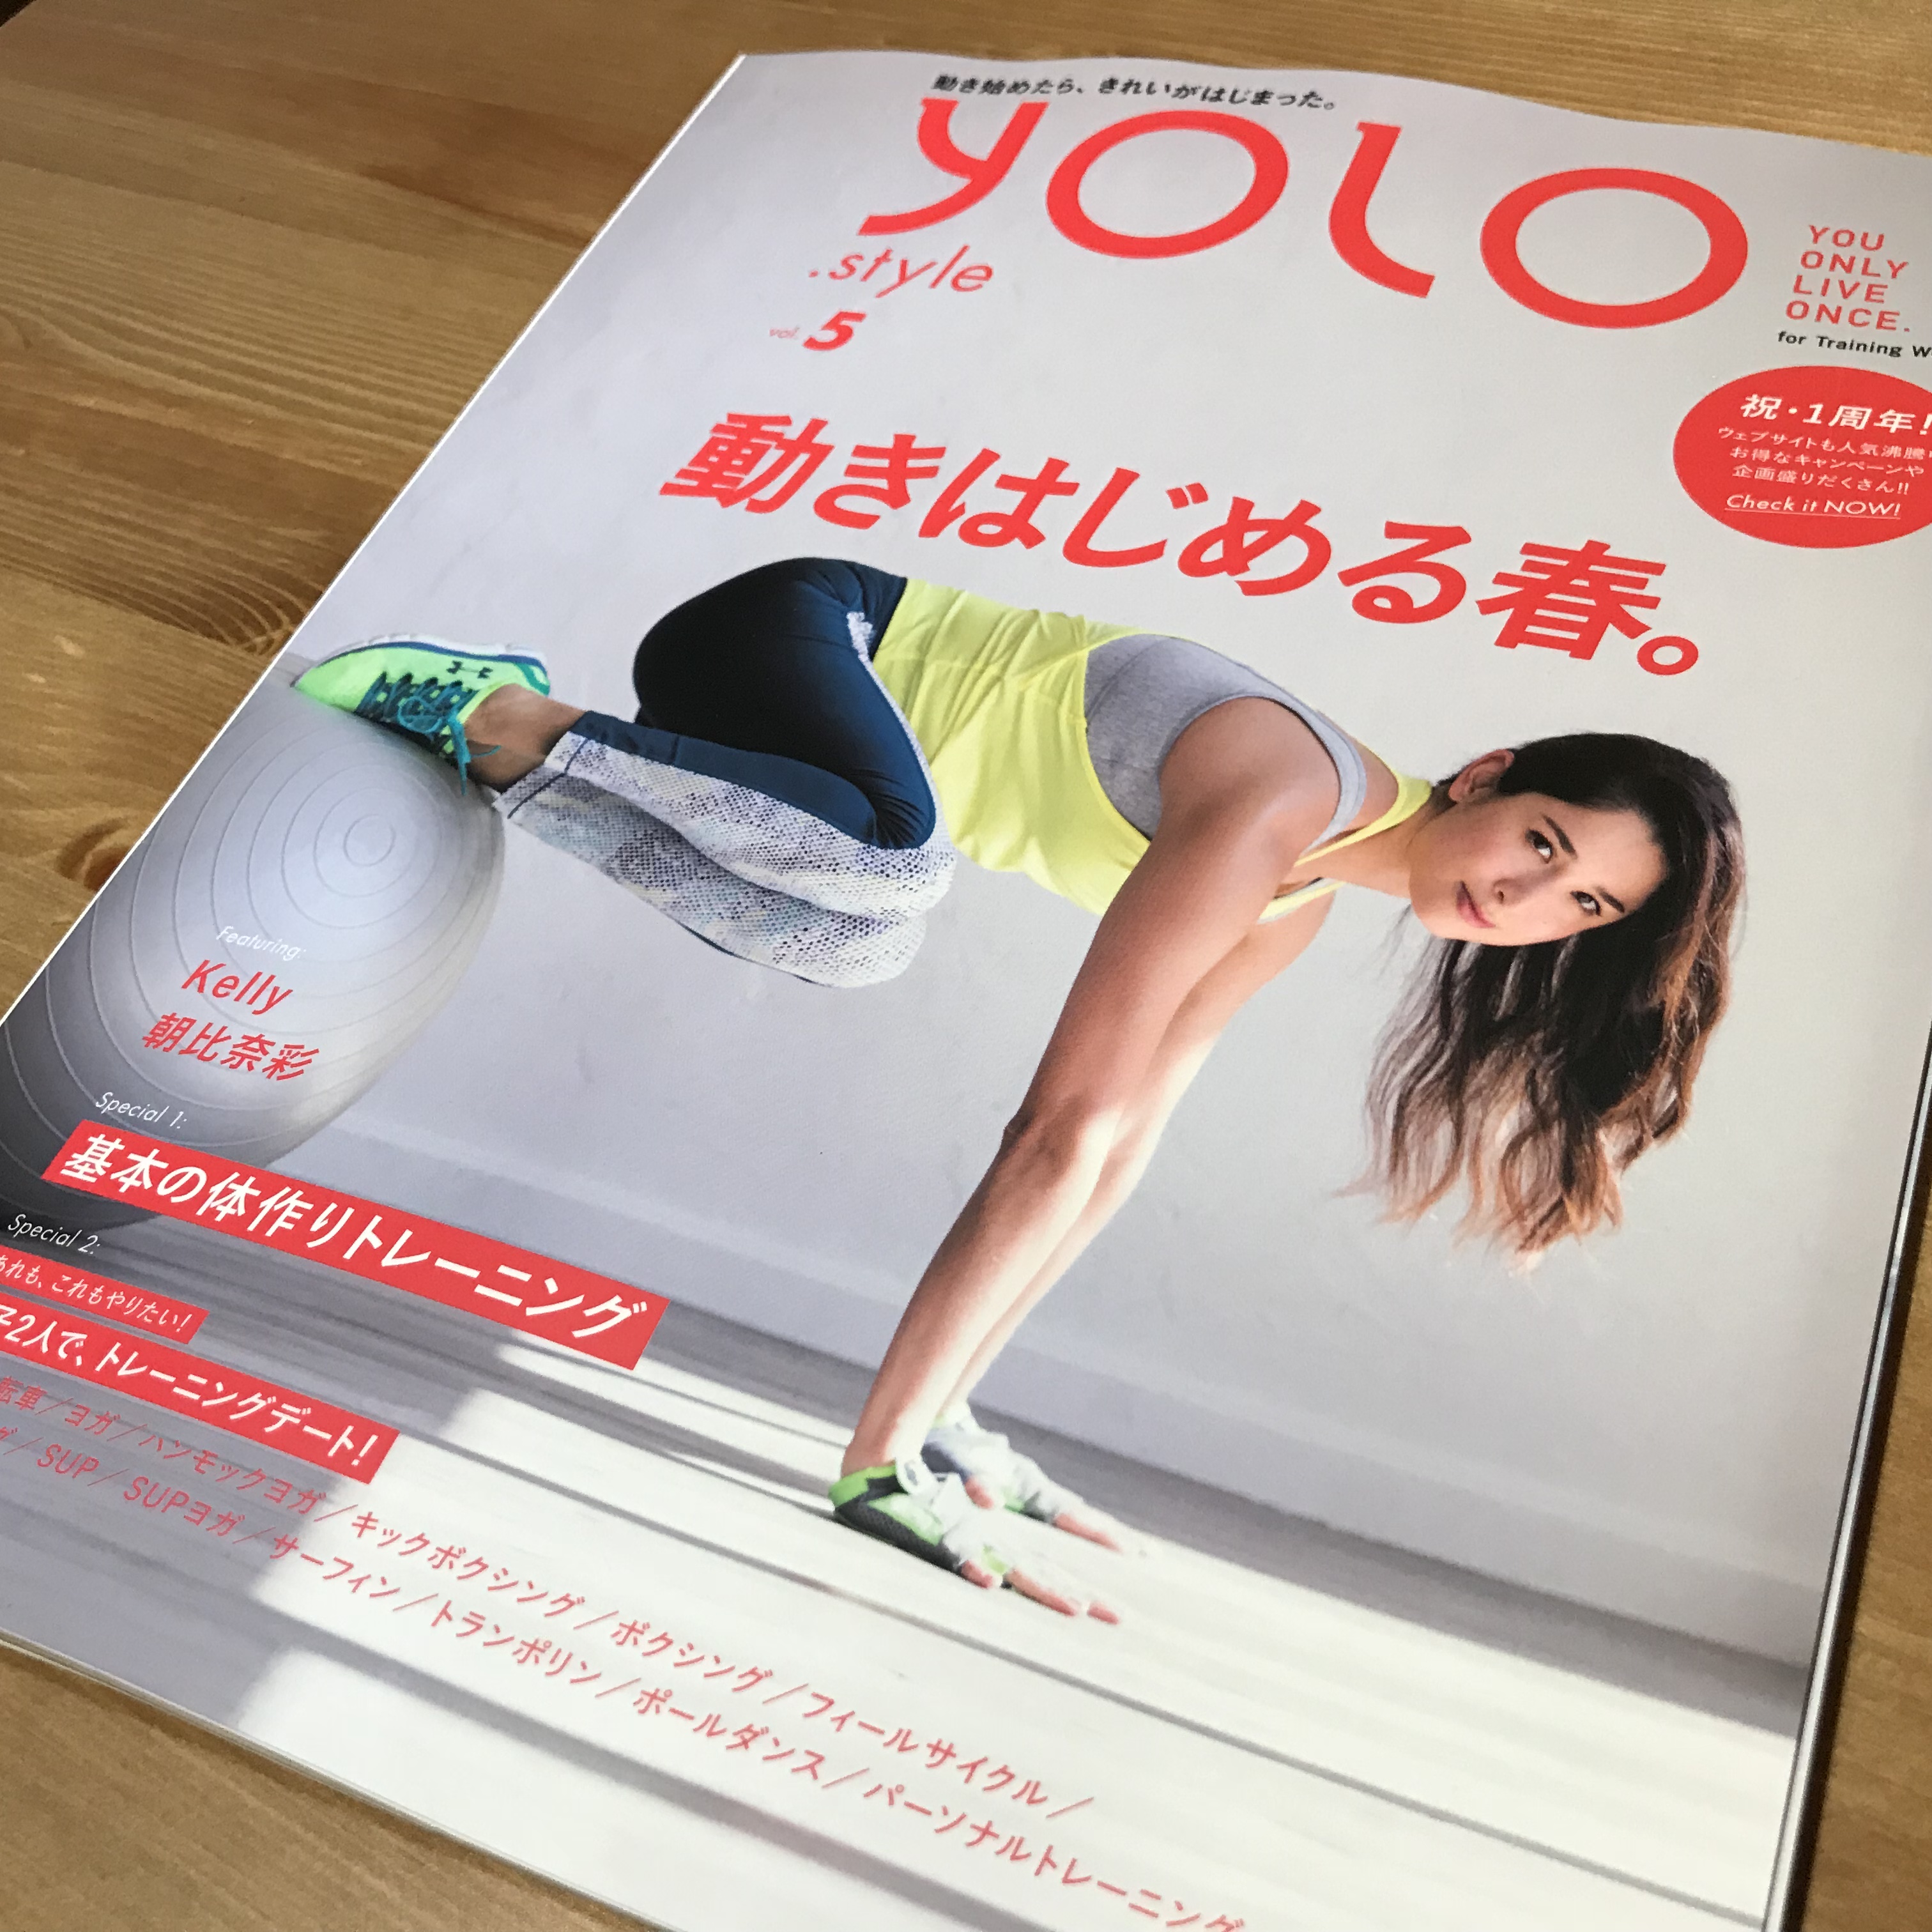 ヘルスコンシャスな情報誌「YOLO vol.5」にて監修・フードスタイリング